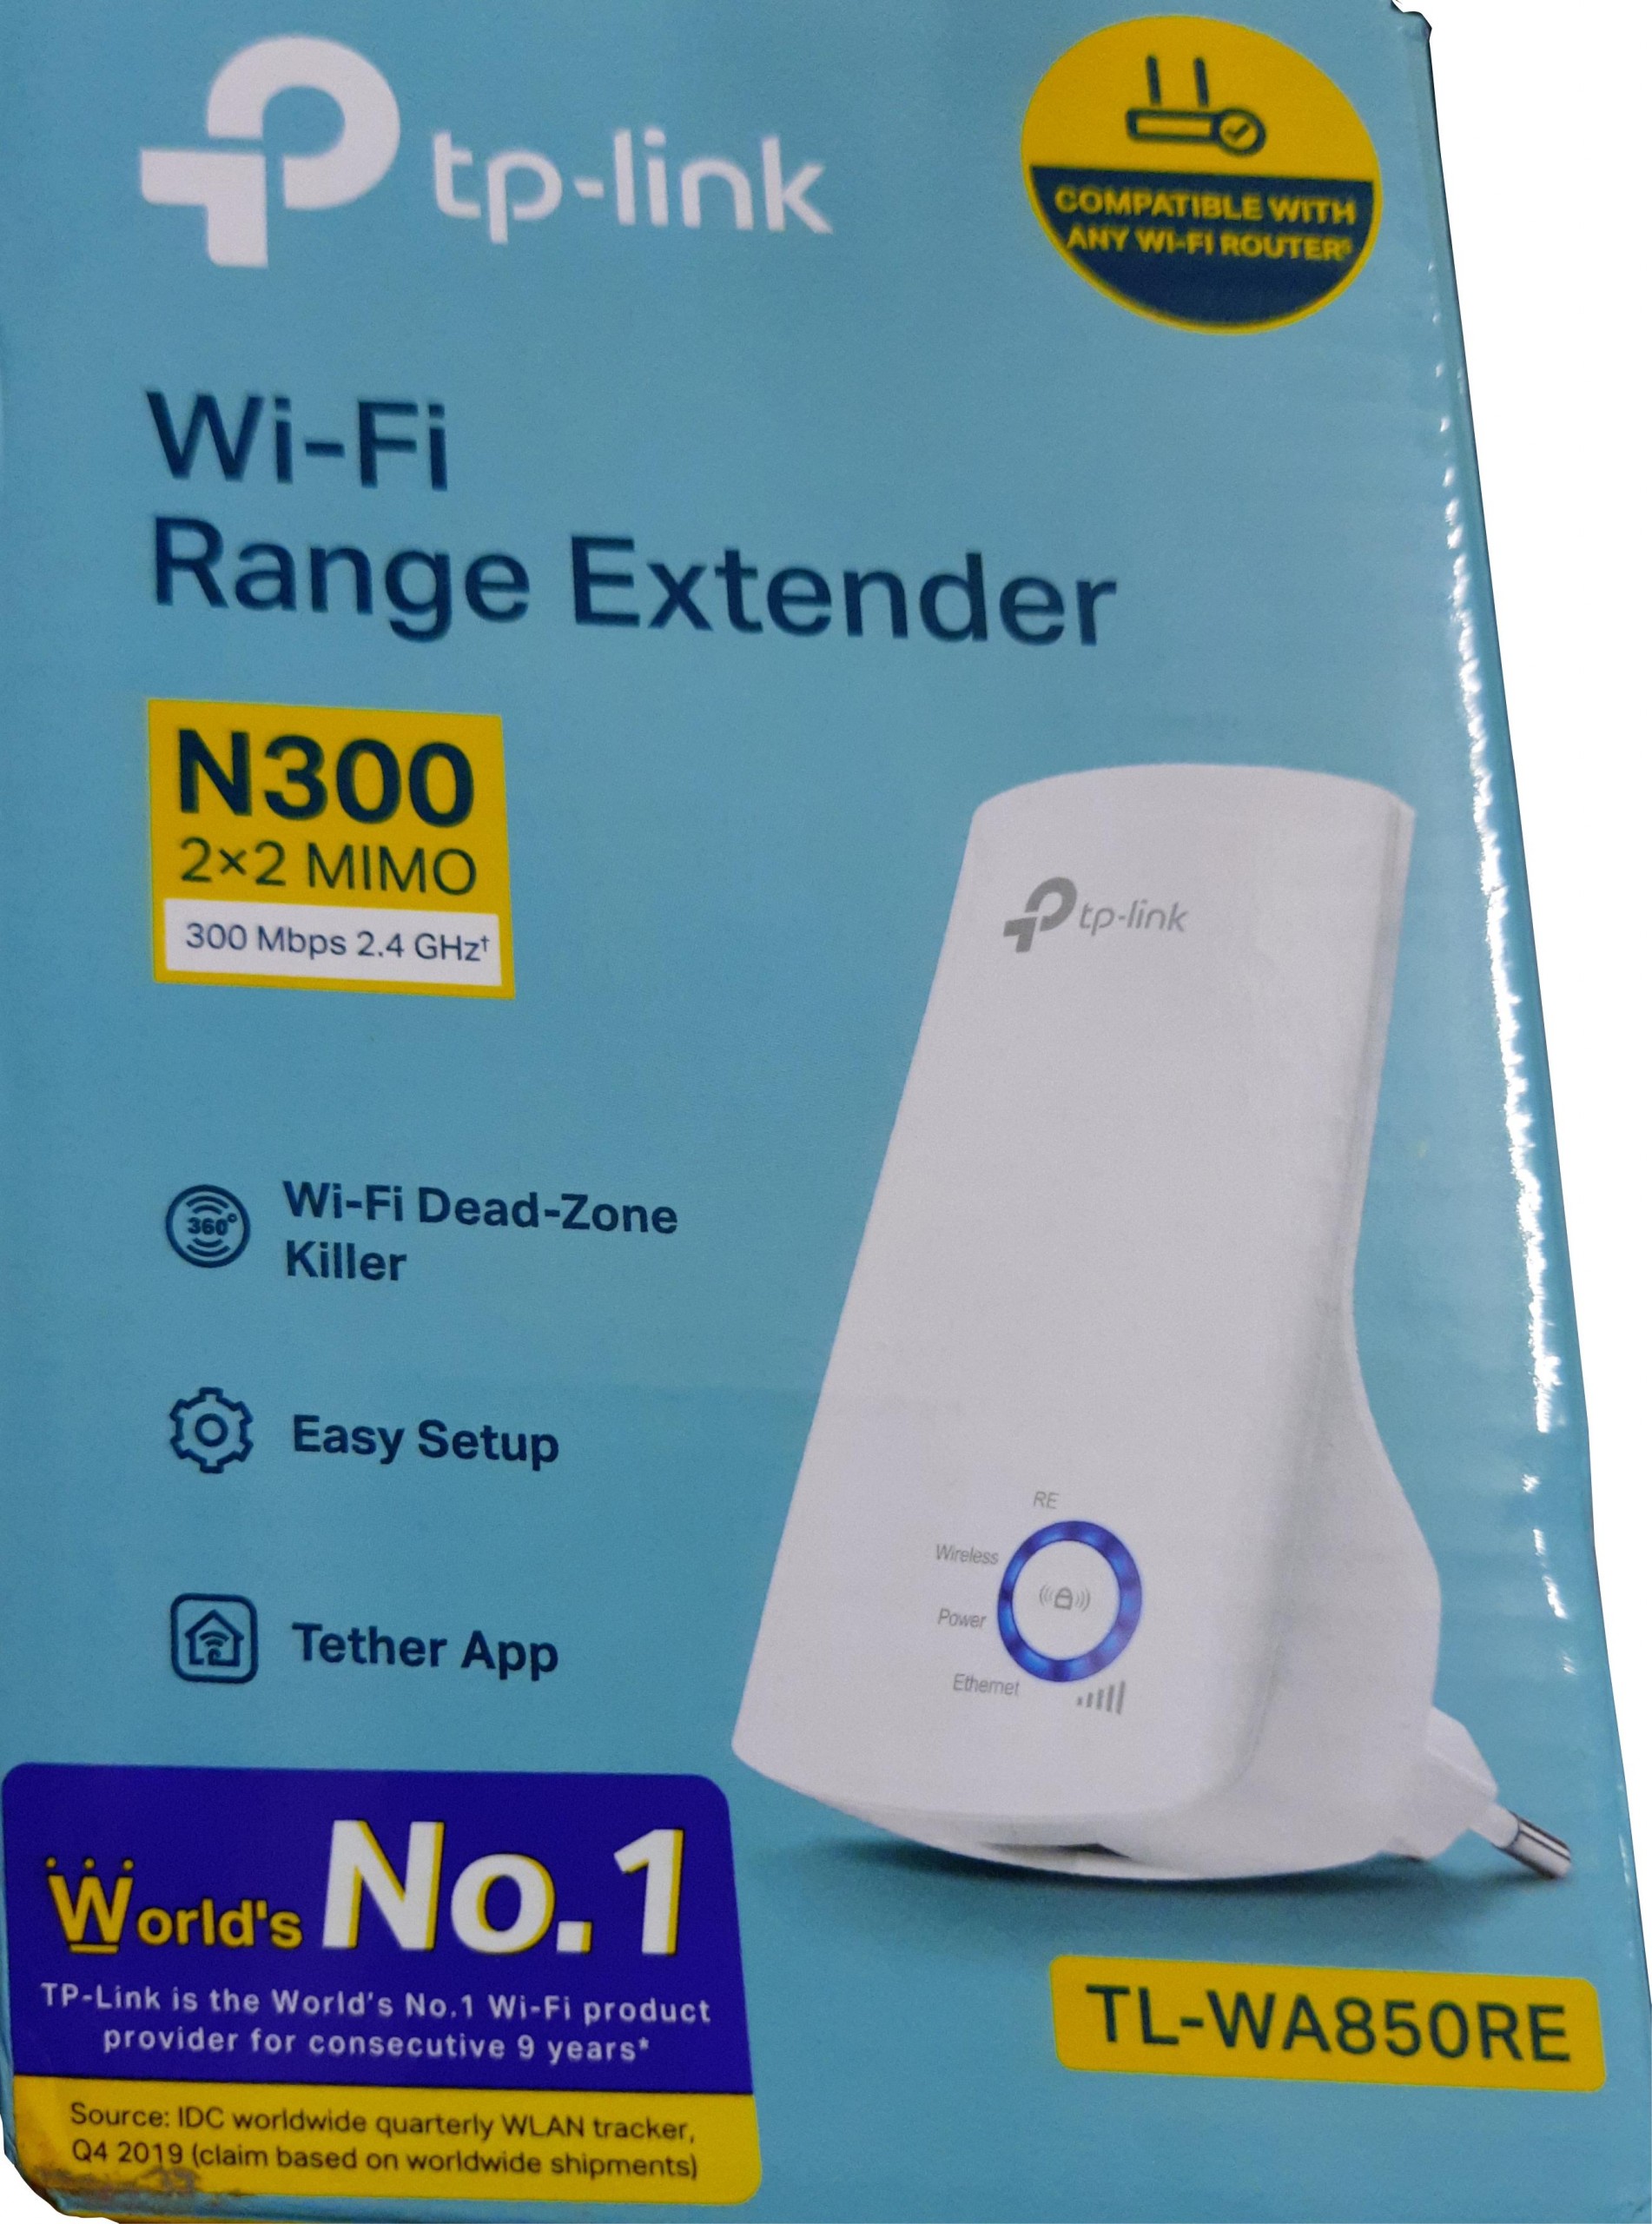 Wi-Fi Range Review (TL-WA850RE)